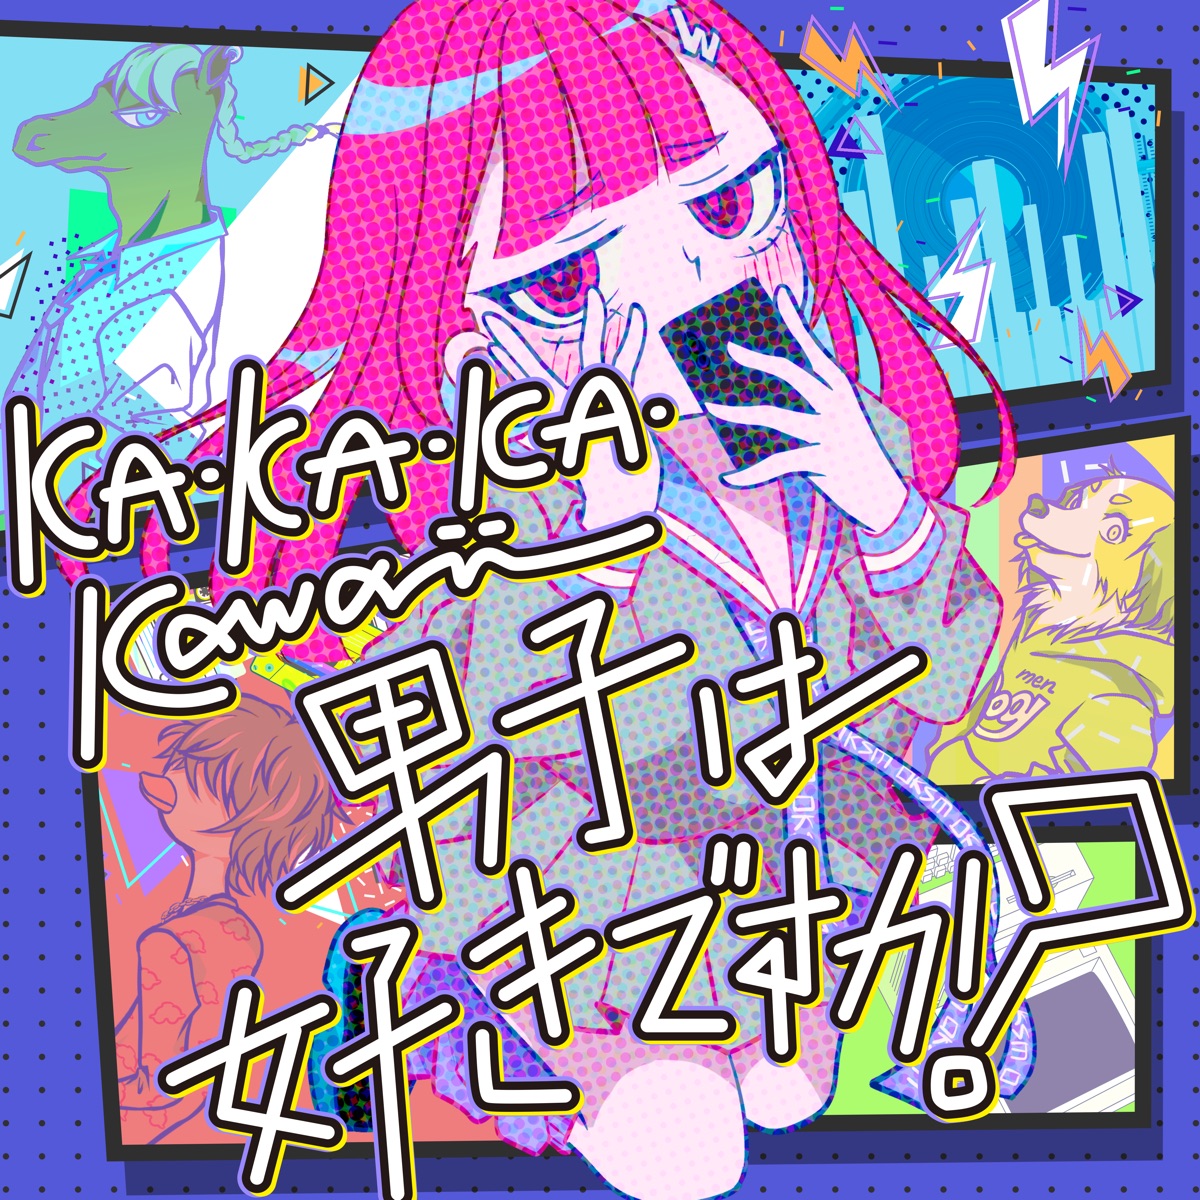 Cover art for『OKASHIMO - KA・KA・KA・Kawaii男子は好きですか？』from the release『KA・KA・KA・Kawaii Dashi wa Suki Desu ka?